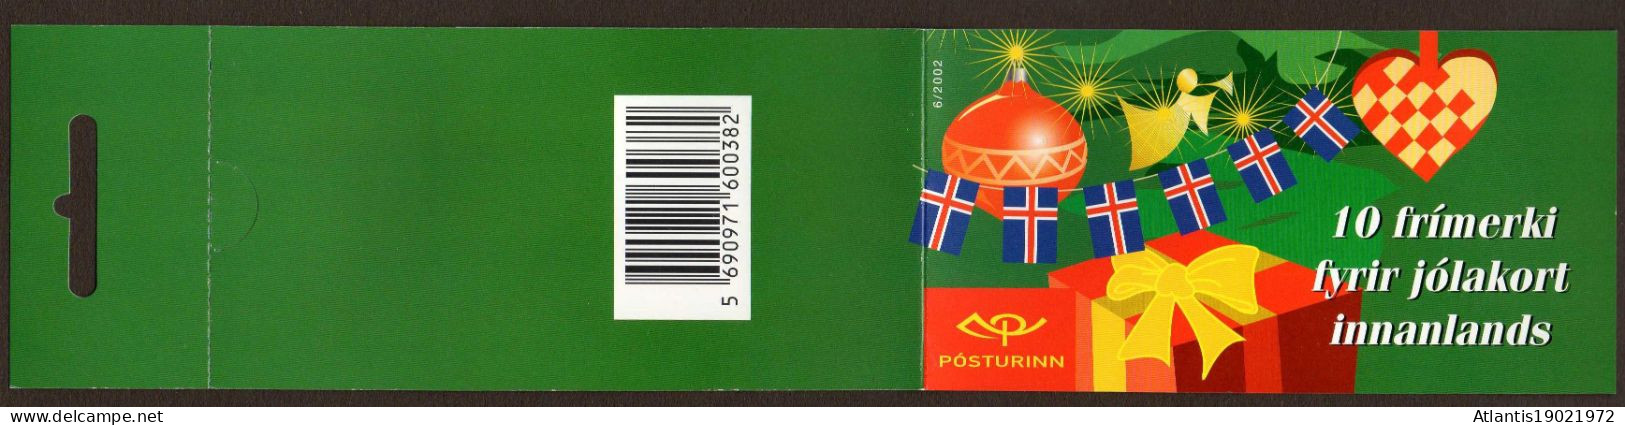 1 MARKENHEFTCHEN ISLAND WEIHNACHTEN JOL 2002 POSTFRISCH - Postzegelboekjes